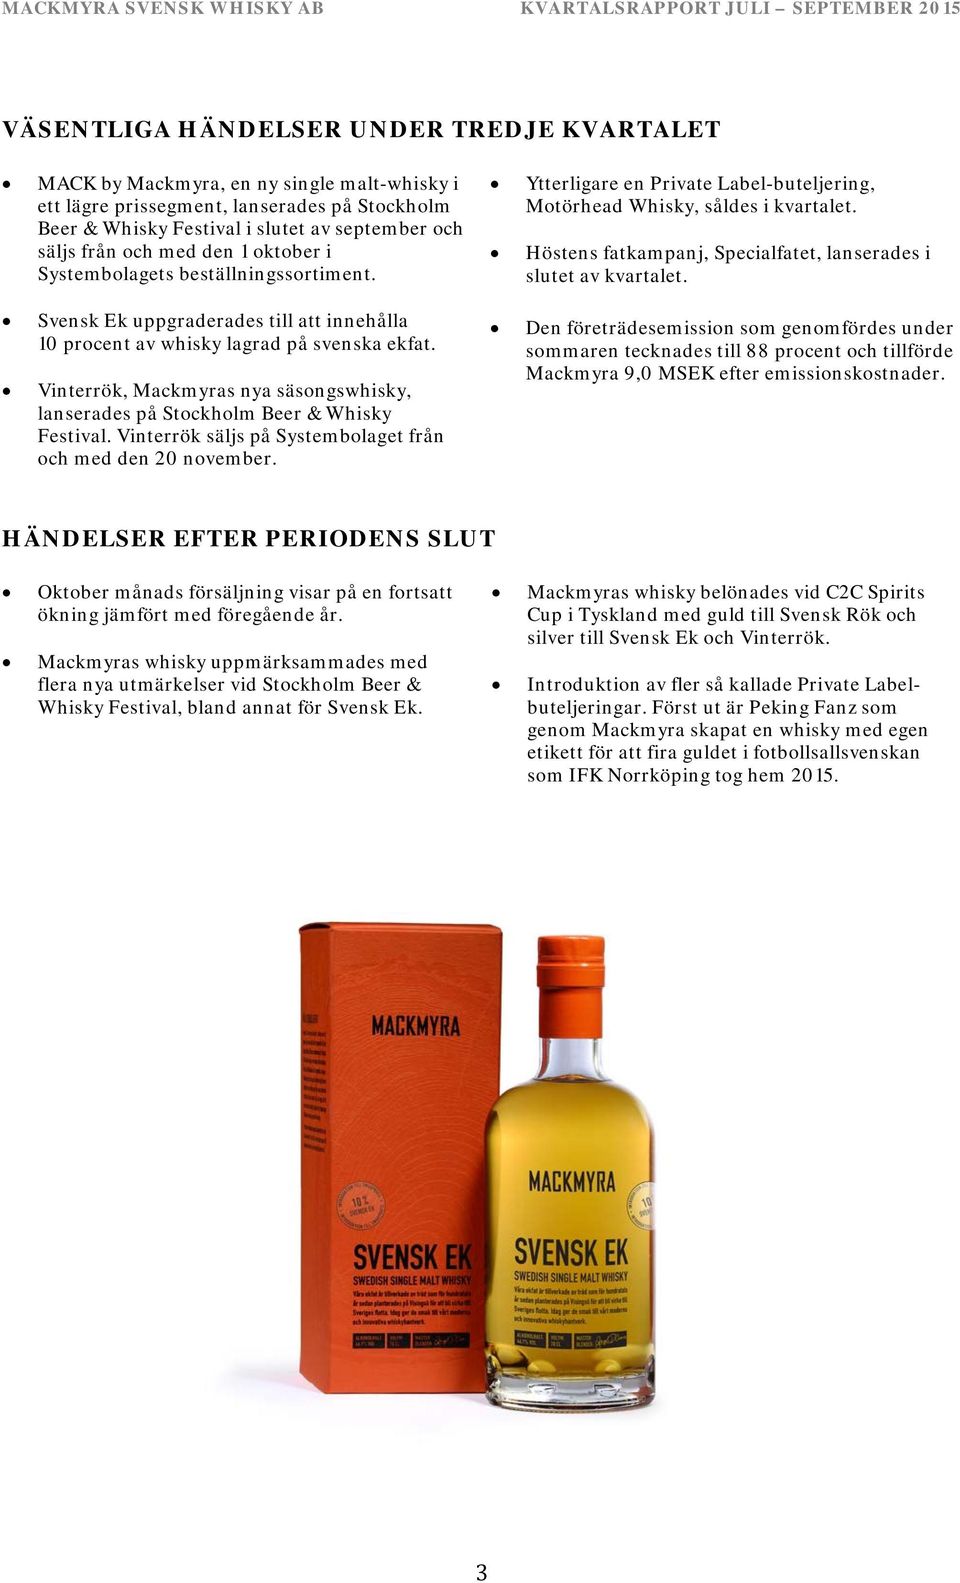 Vinterrök, Mackmyras nya säsongswhisky, lanserades på Stockholm Beer & Whisky Festival. Vinterrök säljs på Systembolaget från och med den 20 november.